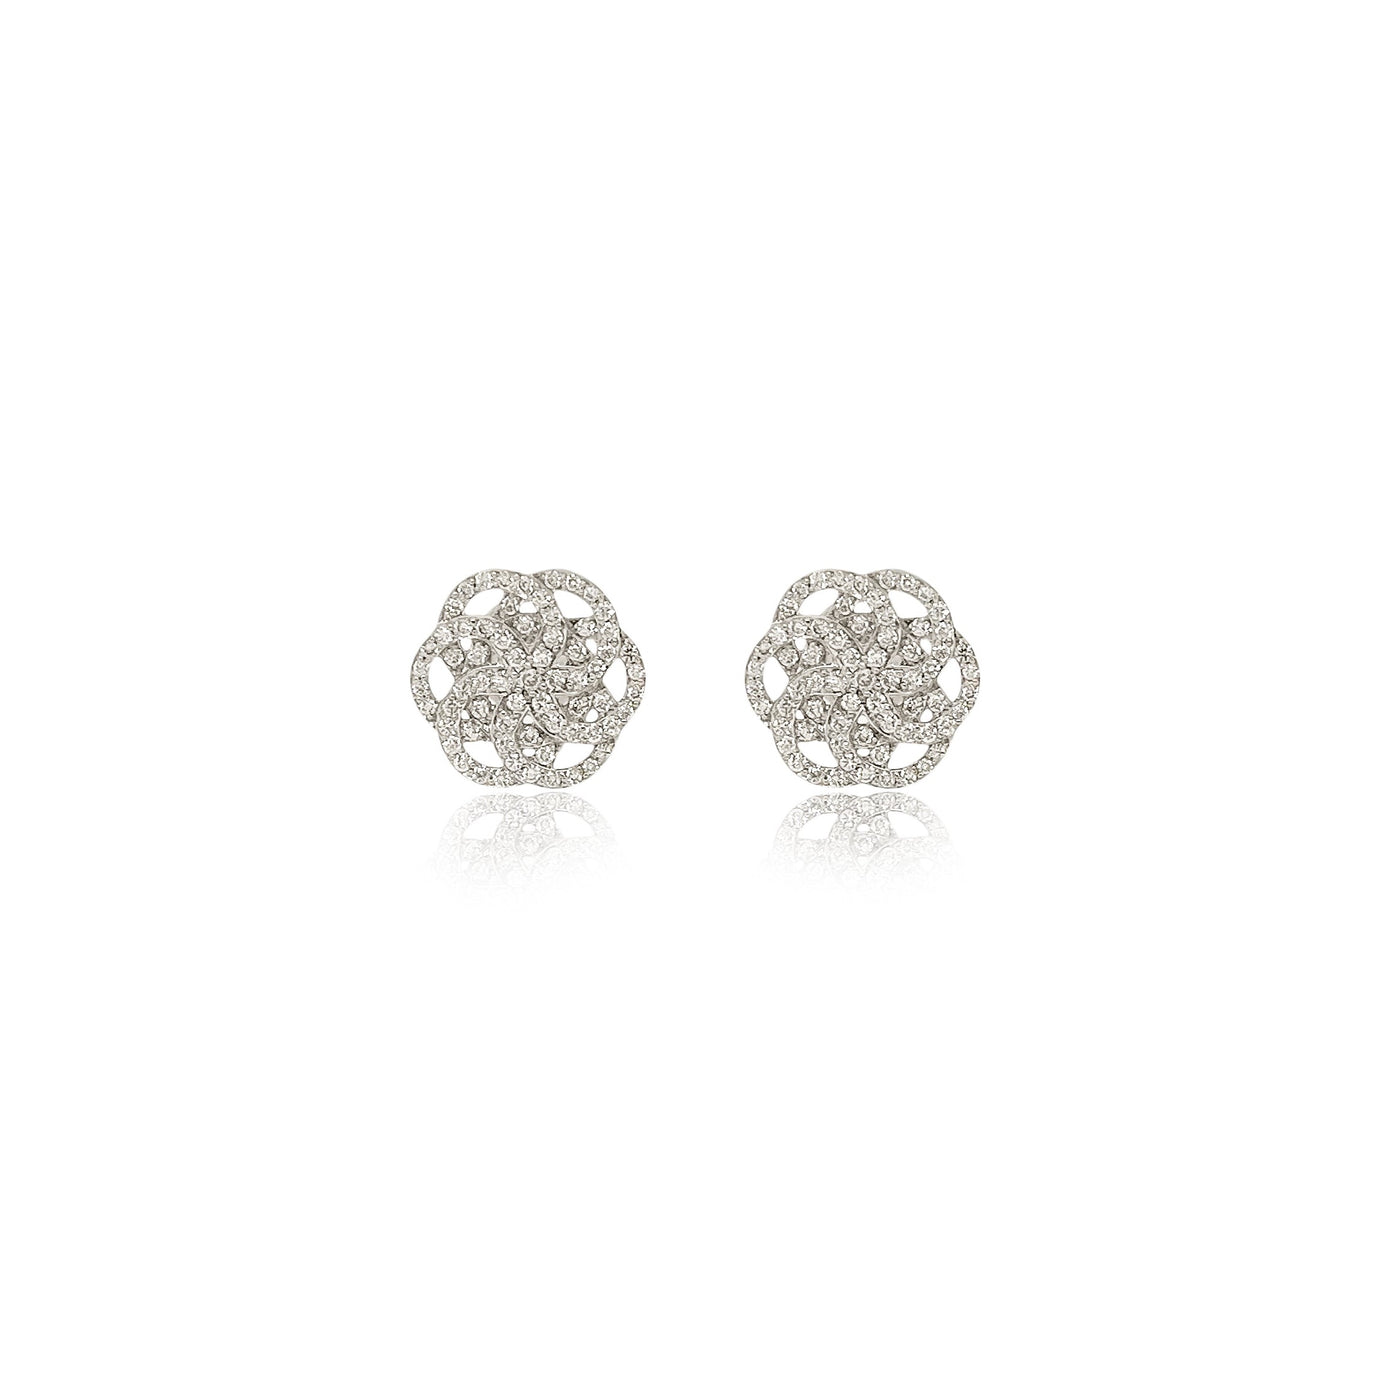 Pave Set Diamond Flower of Life Earrings in 18k White Gold